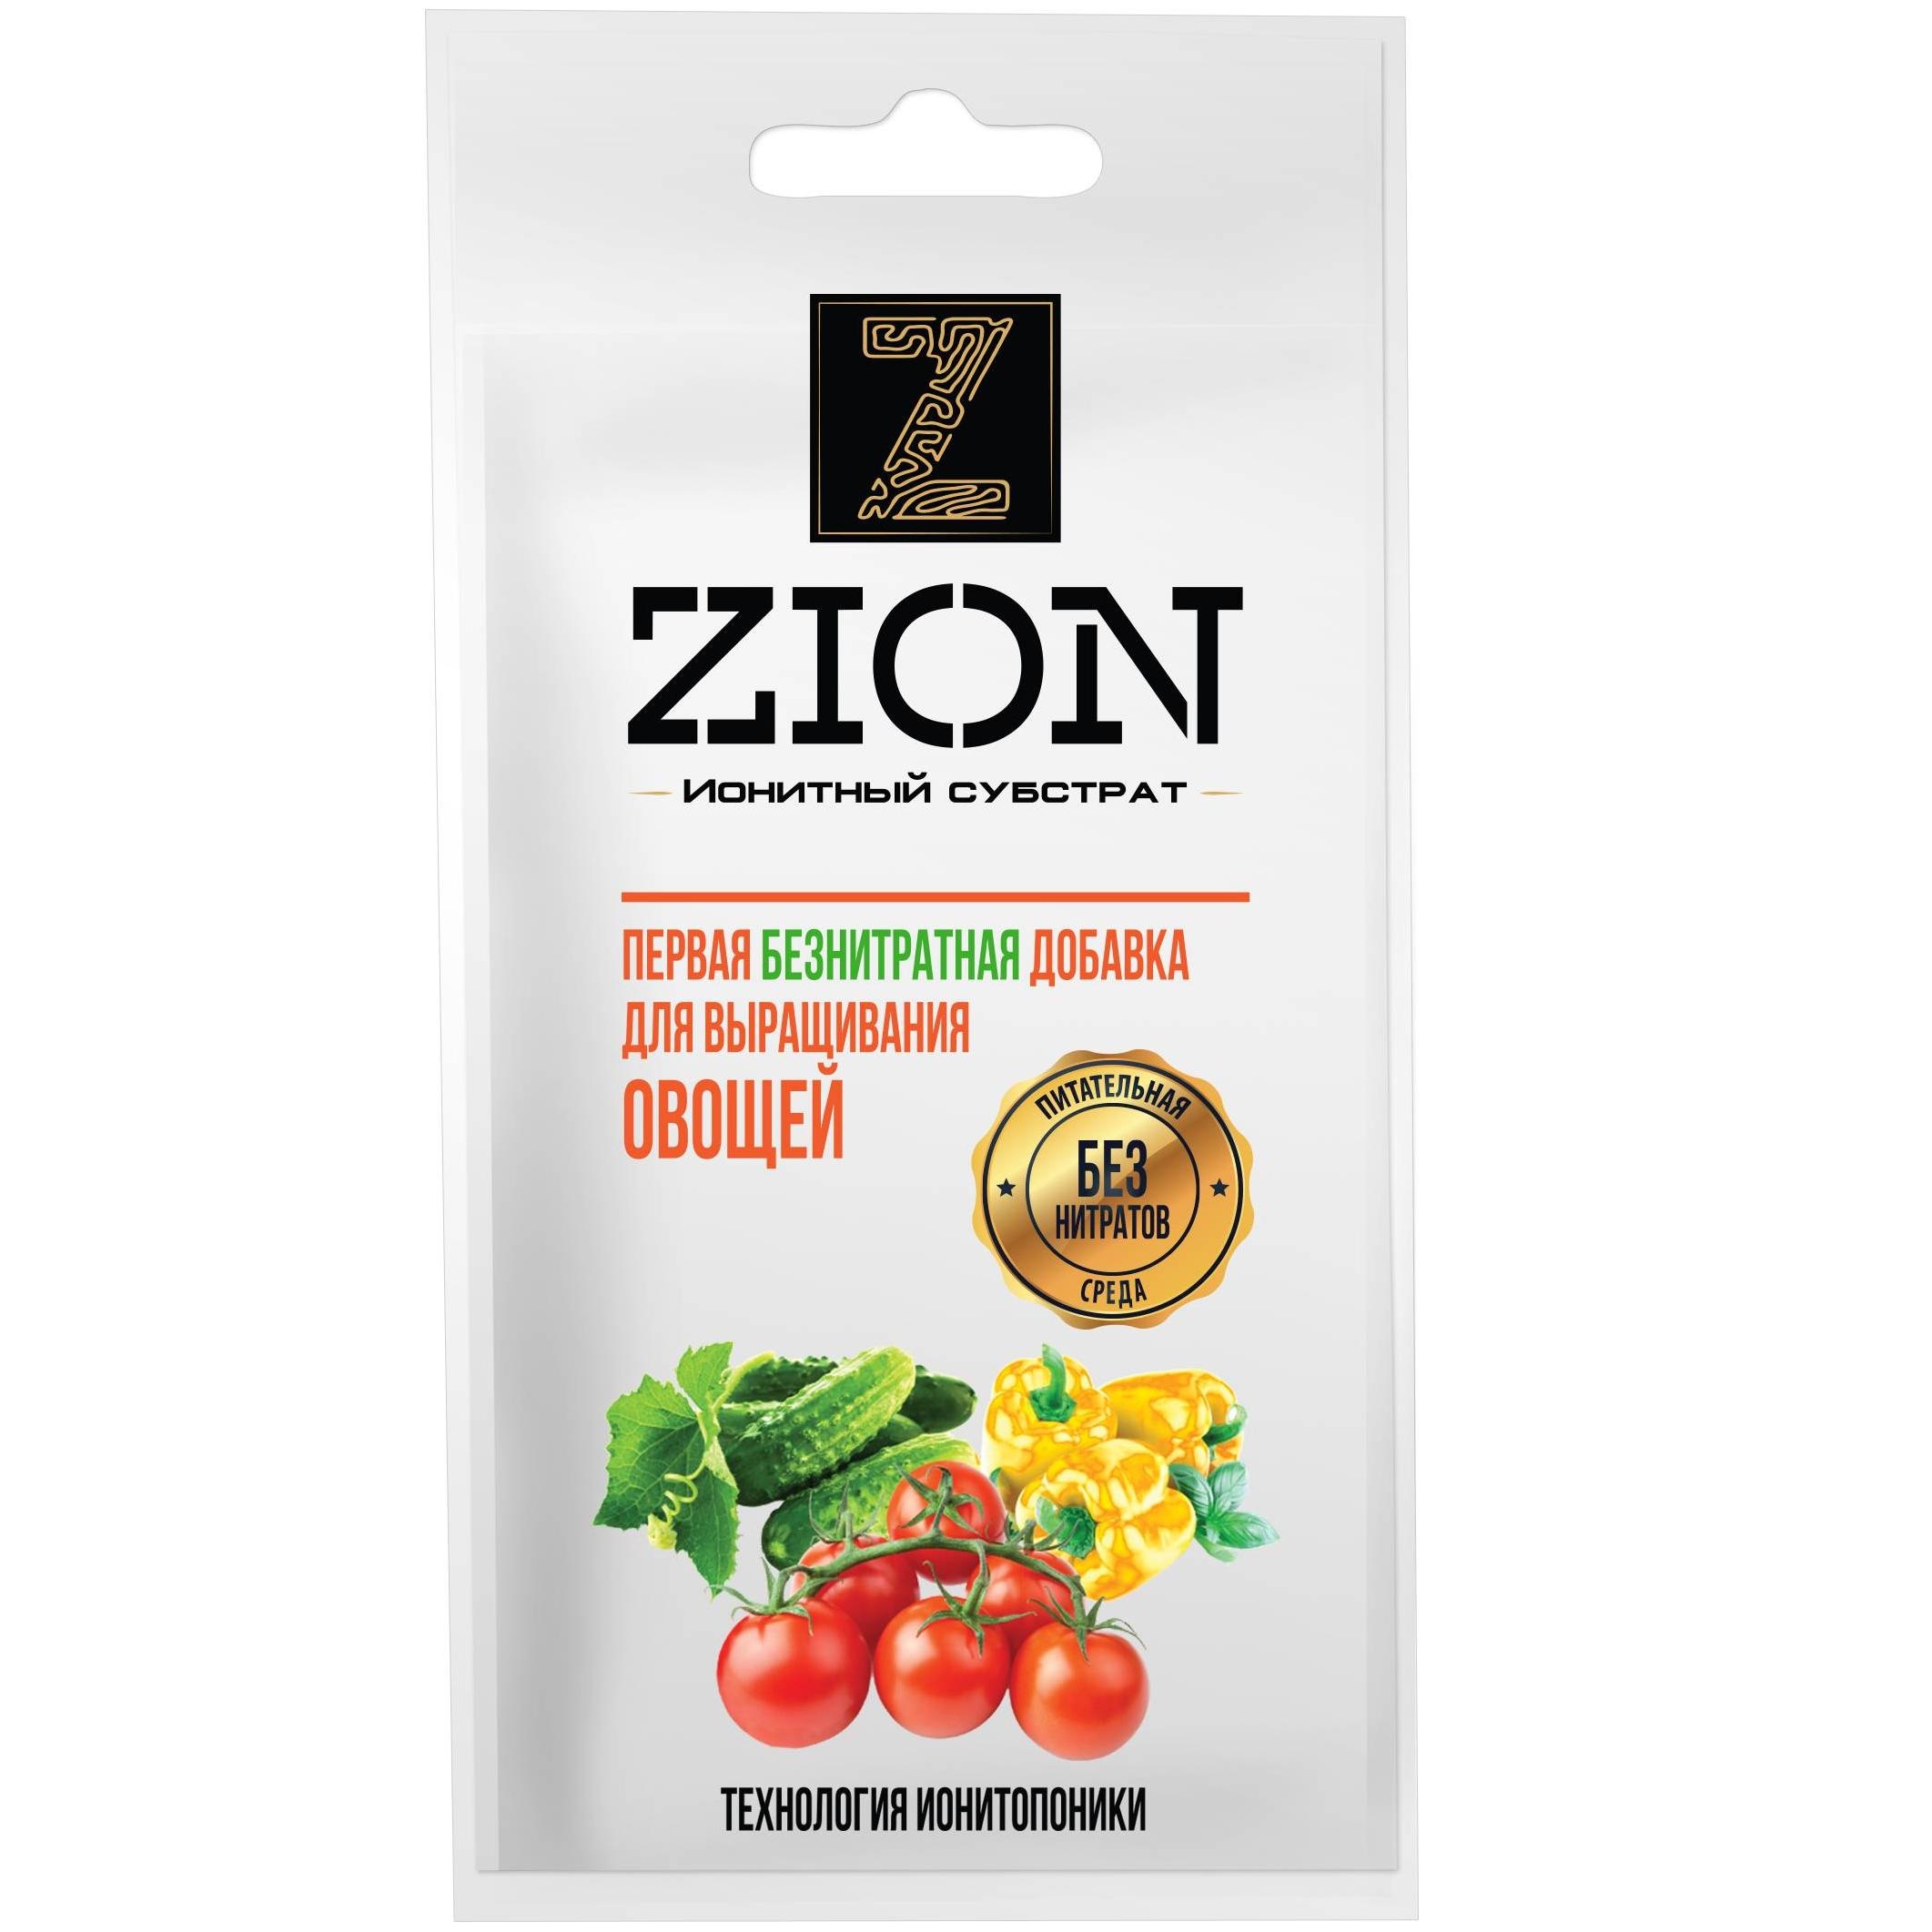 Цион для овощей отзывы. Удобрение Zion ионитный субстрат для овощей. Цион ионитный субстрат для овощей 30г/300. Цион для овощей 30г. Цион (Zion) 30гр для овощей (ионитный субстрат) пакет 1шт/300шт.